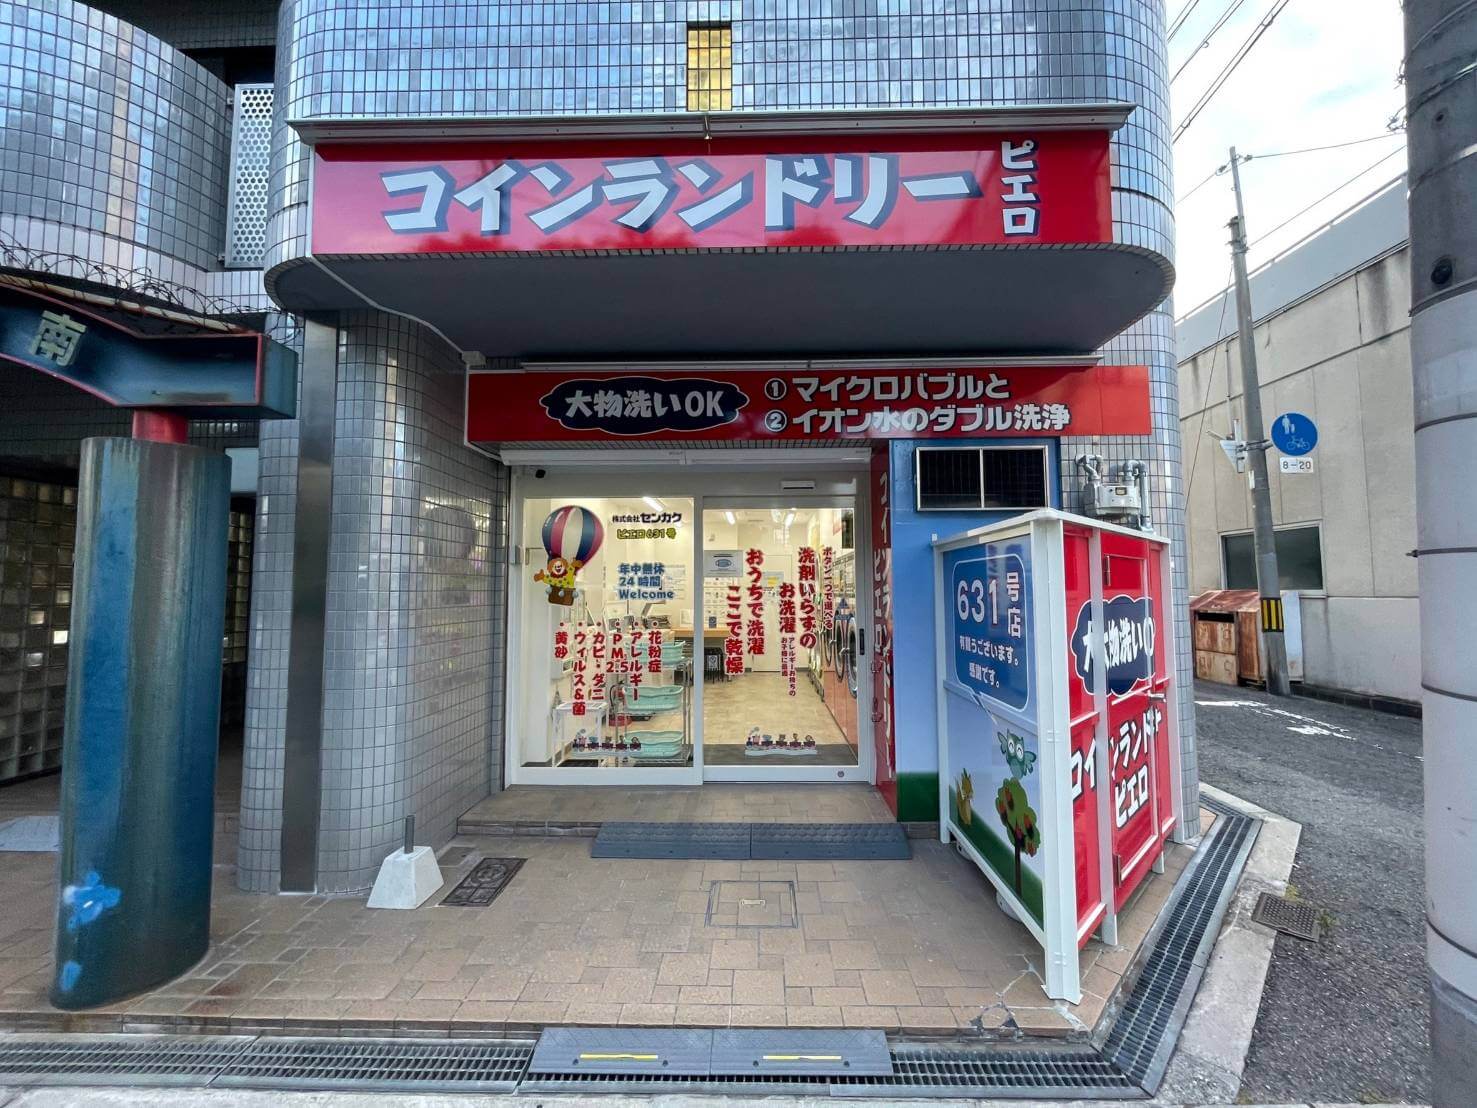 コインランドリー/ピエロ 631号 阪南町店の写真